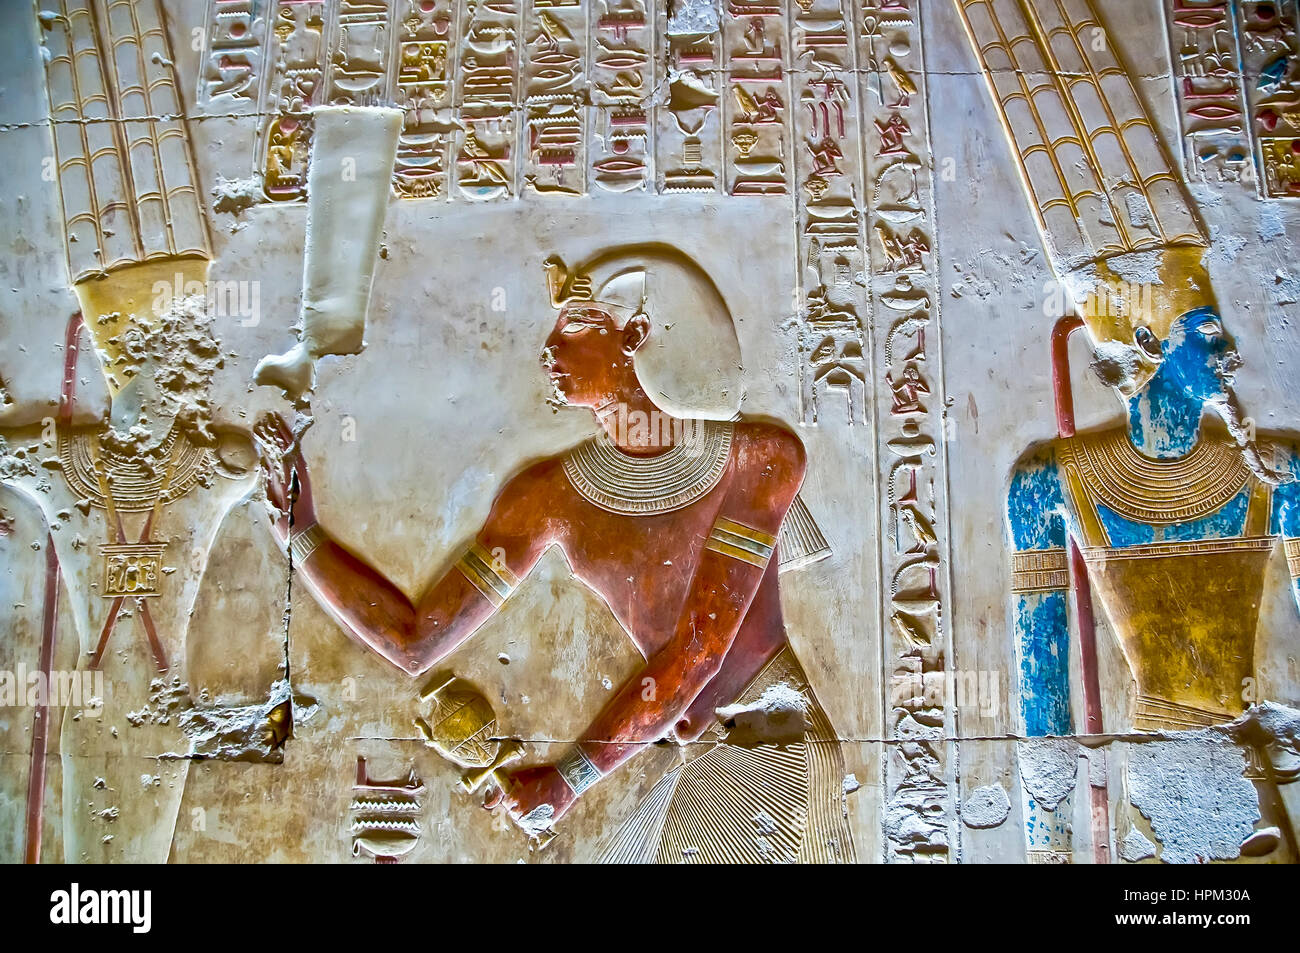 Tempel von Sethos I bei Abydos mit verändertem Erscheinungsbild Relief Figuren, alles in hellen Farben Stockfoto